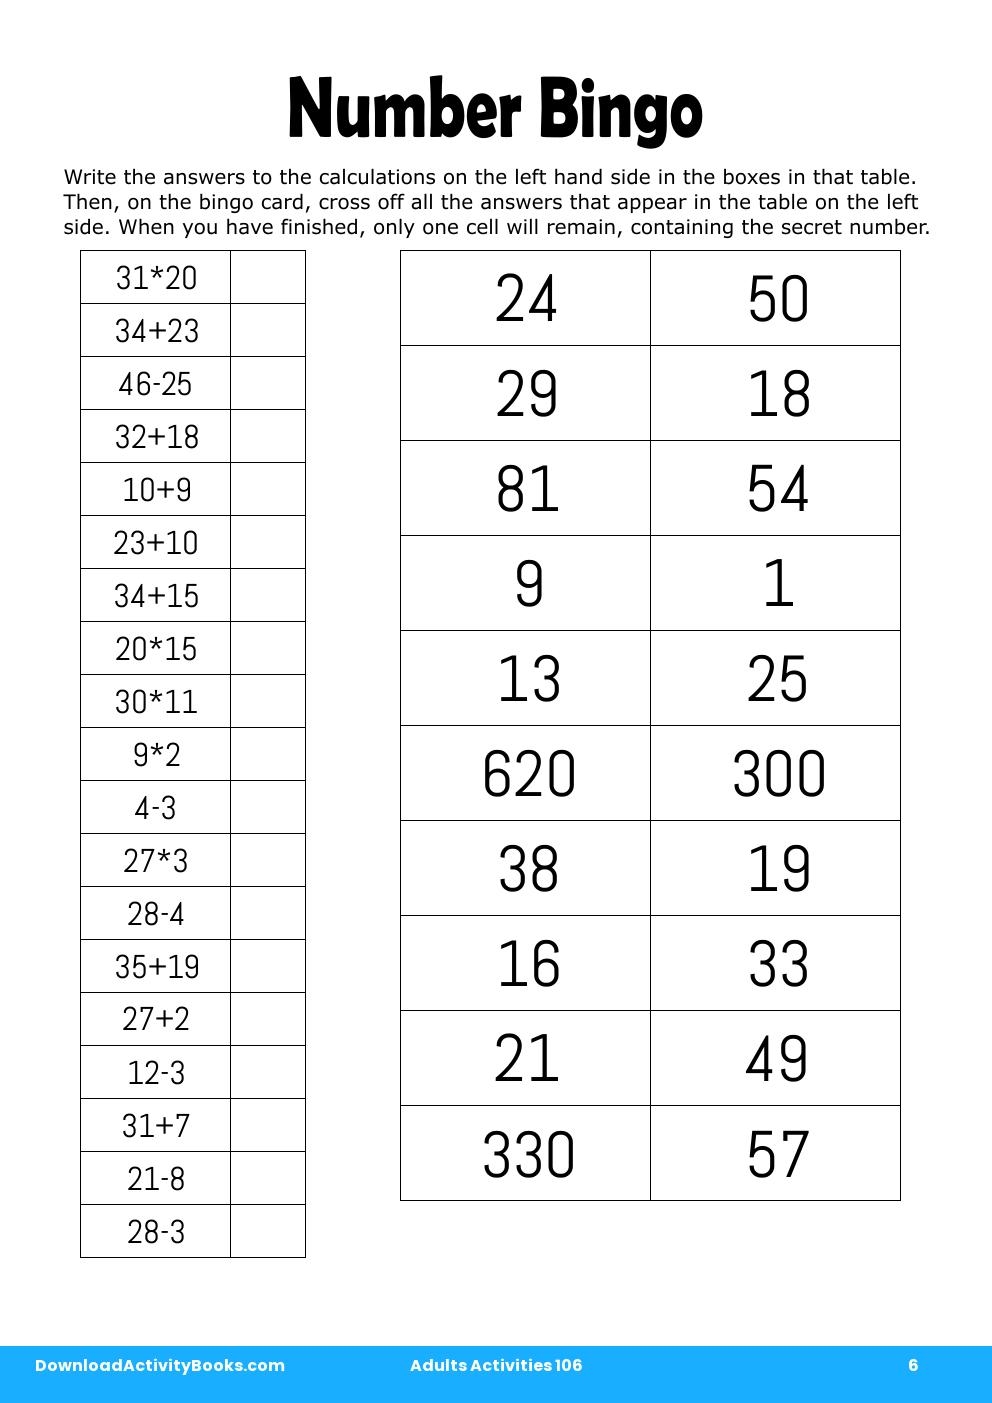 Number Bingo in Adults Activities 106